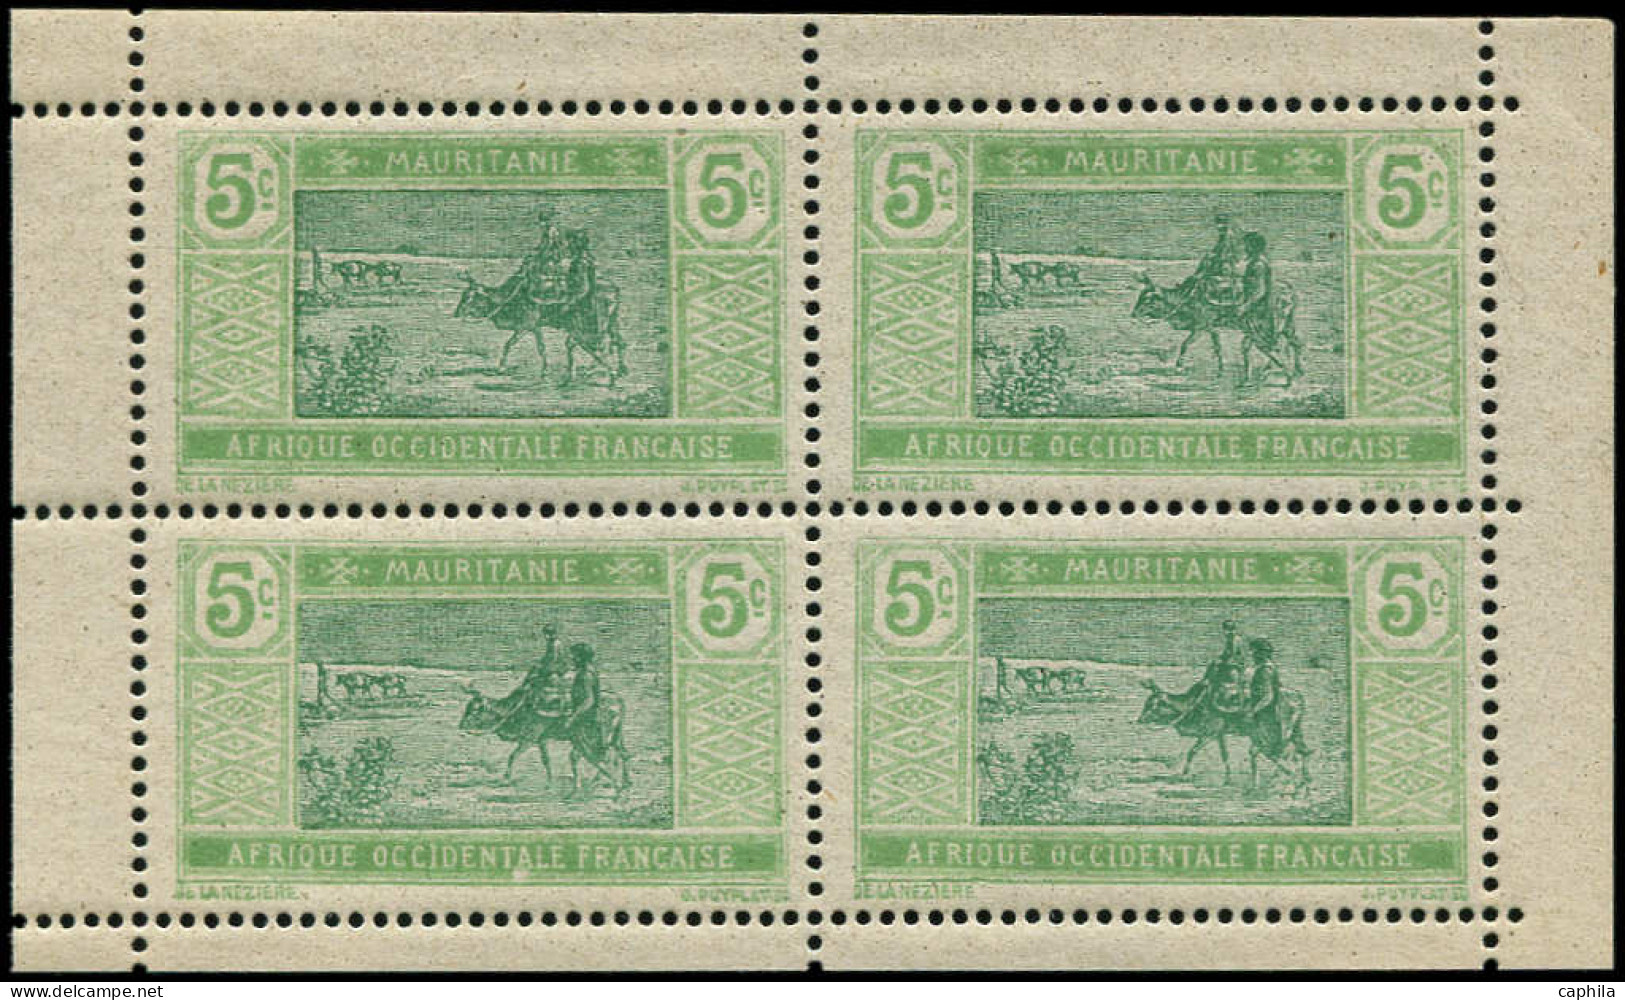 ** MAURITANIE - Poste - 20c, Bloc De 4 De Carnet, Papier Couché (gomme Coloniale): 5c. Marchands - Unused Stamps